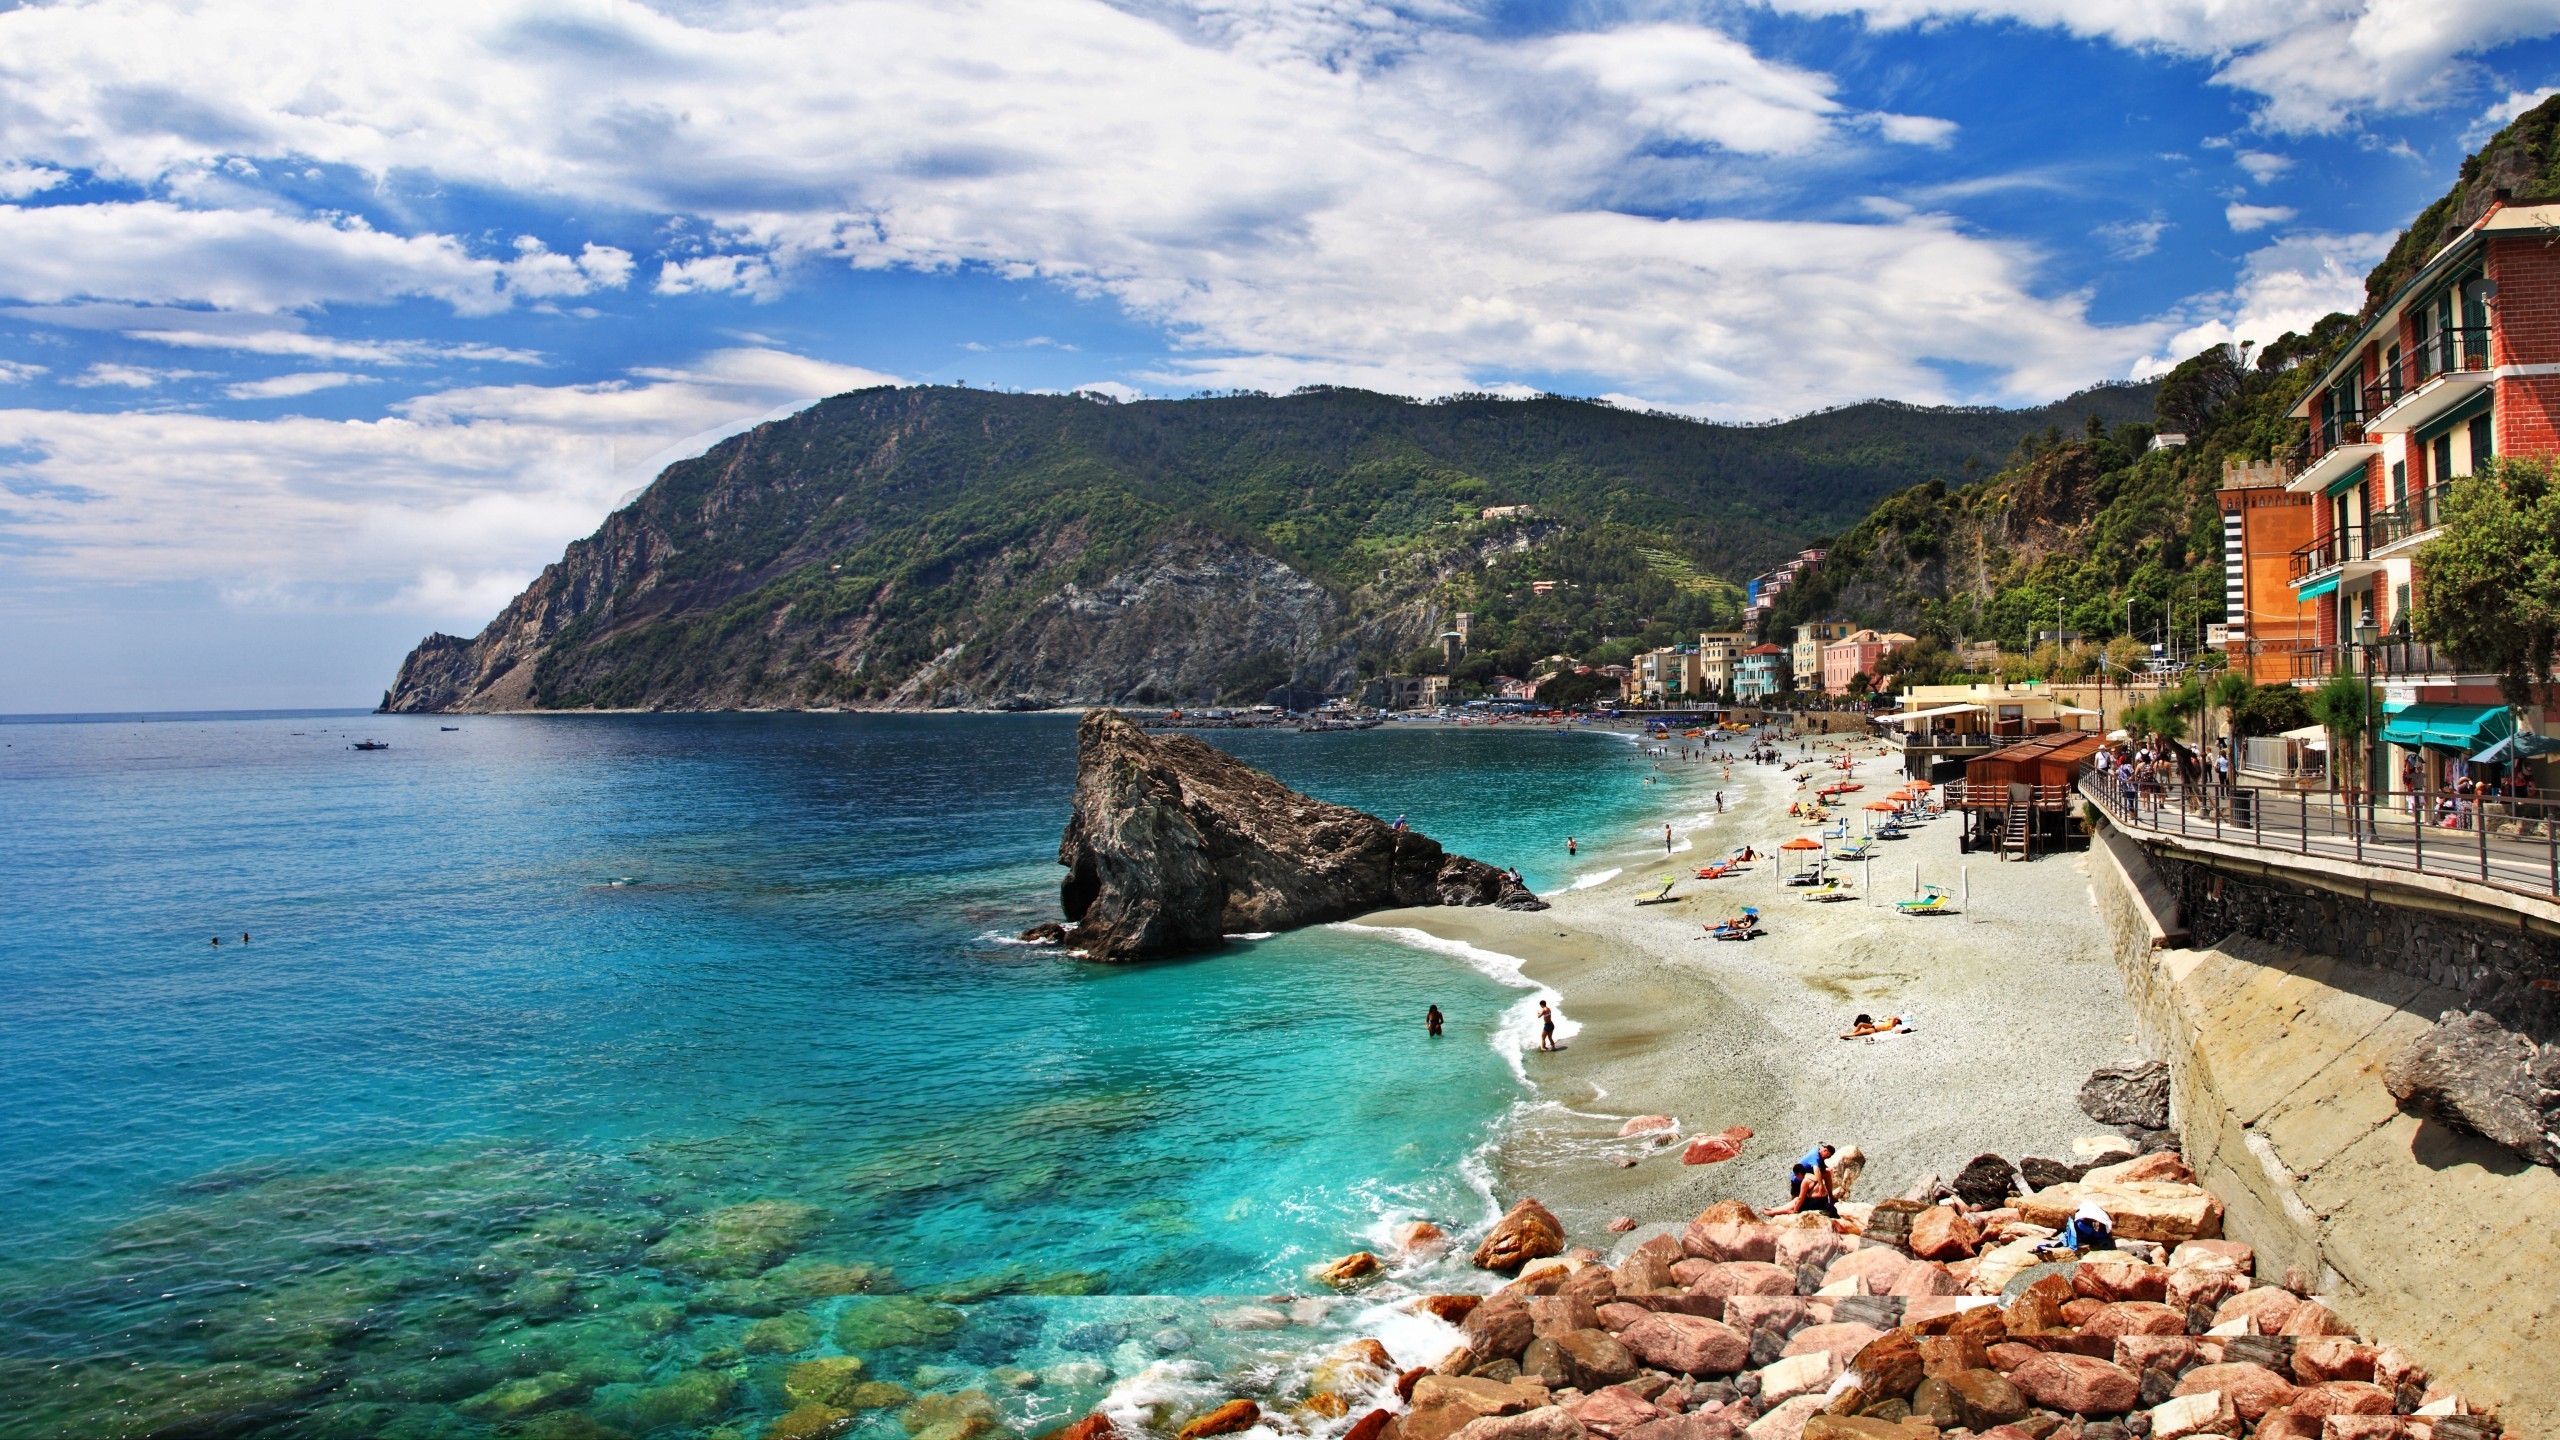 Monterosso al Mare Cinque Terre for 2560x1440 HDTV resolution